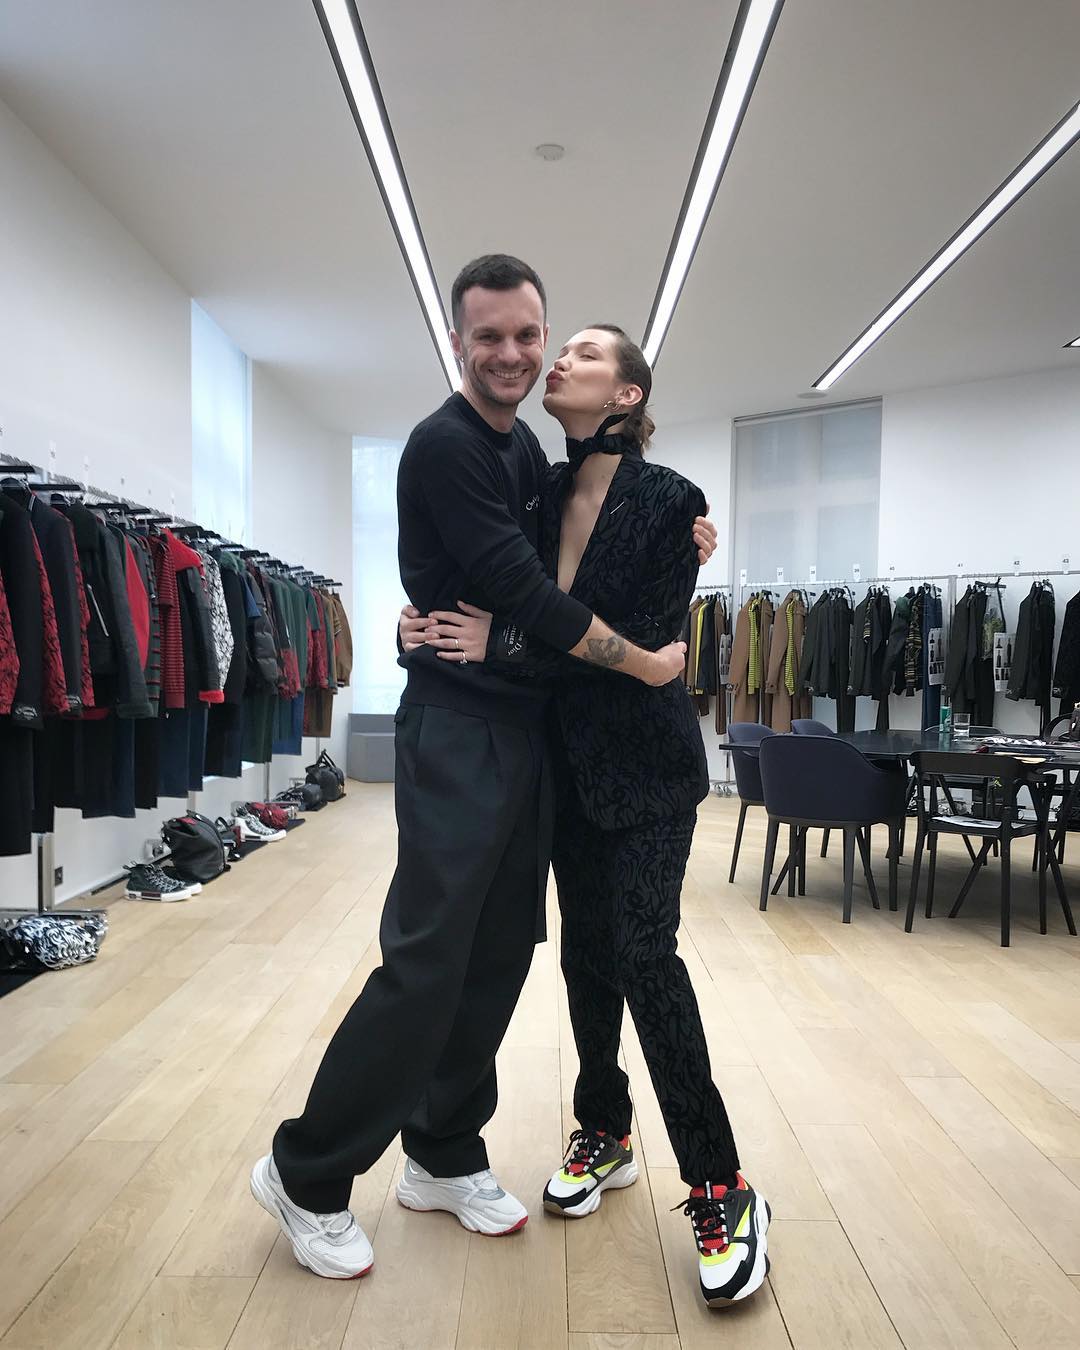 Kim Jones to succeed Kris Van Assche as Dior's menswear designer